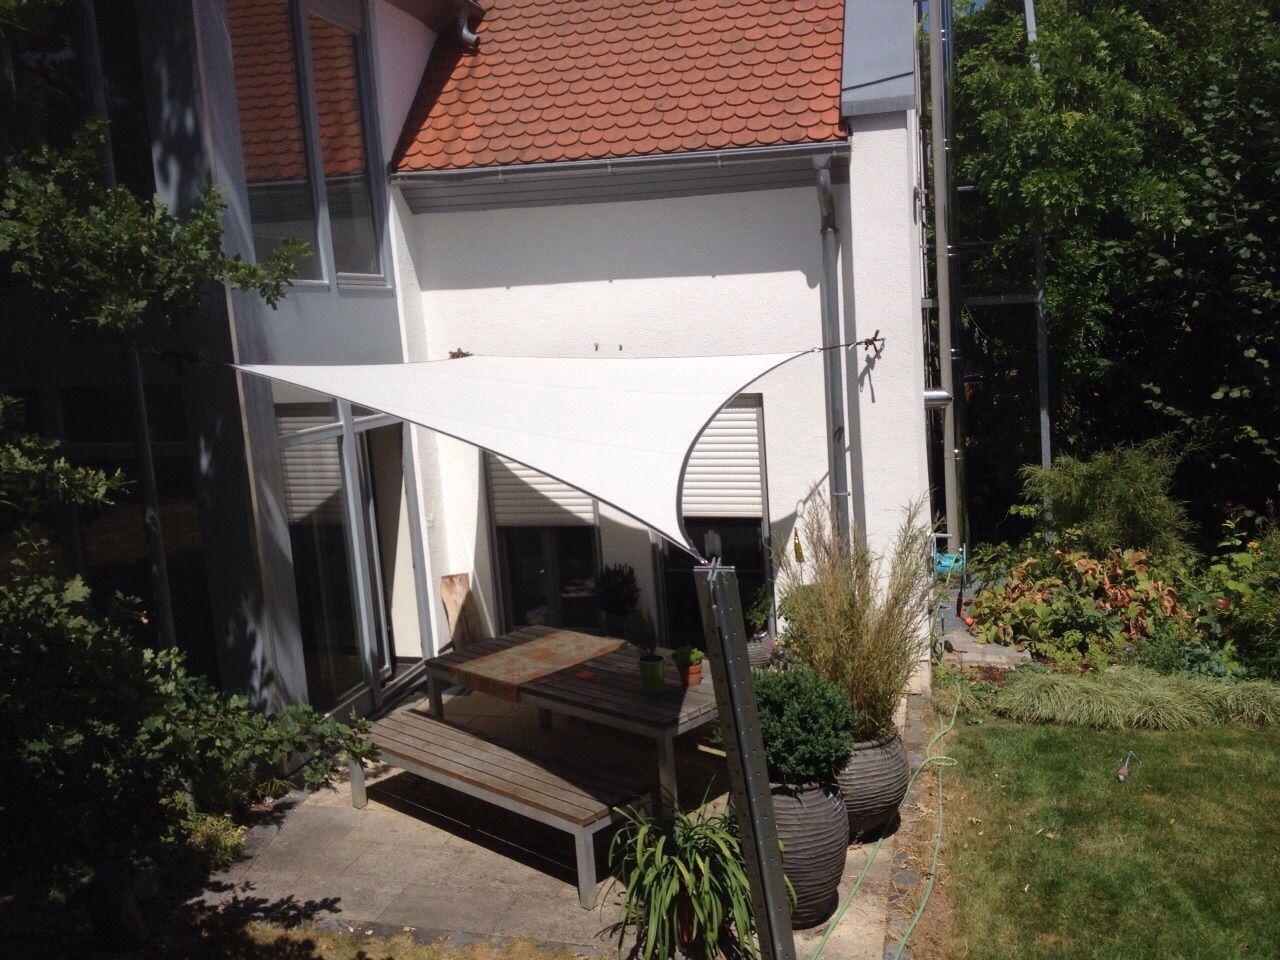 Sonnensegel - Sonnenschutz der Extraklasse, derraumhoch3 derraumhoch3 Terrace Accessories & decoration